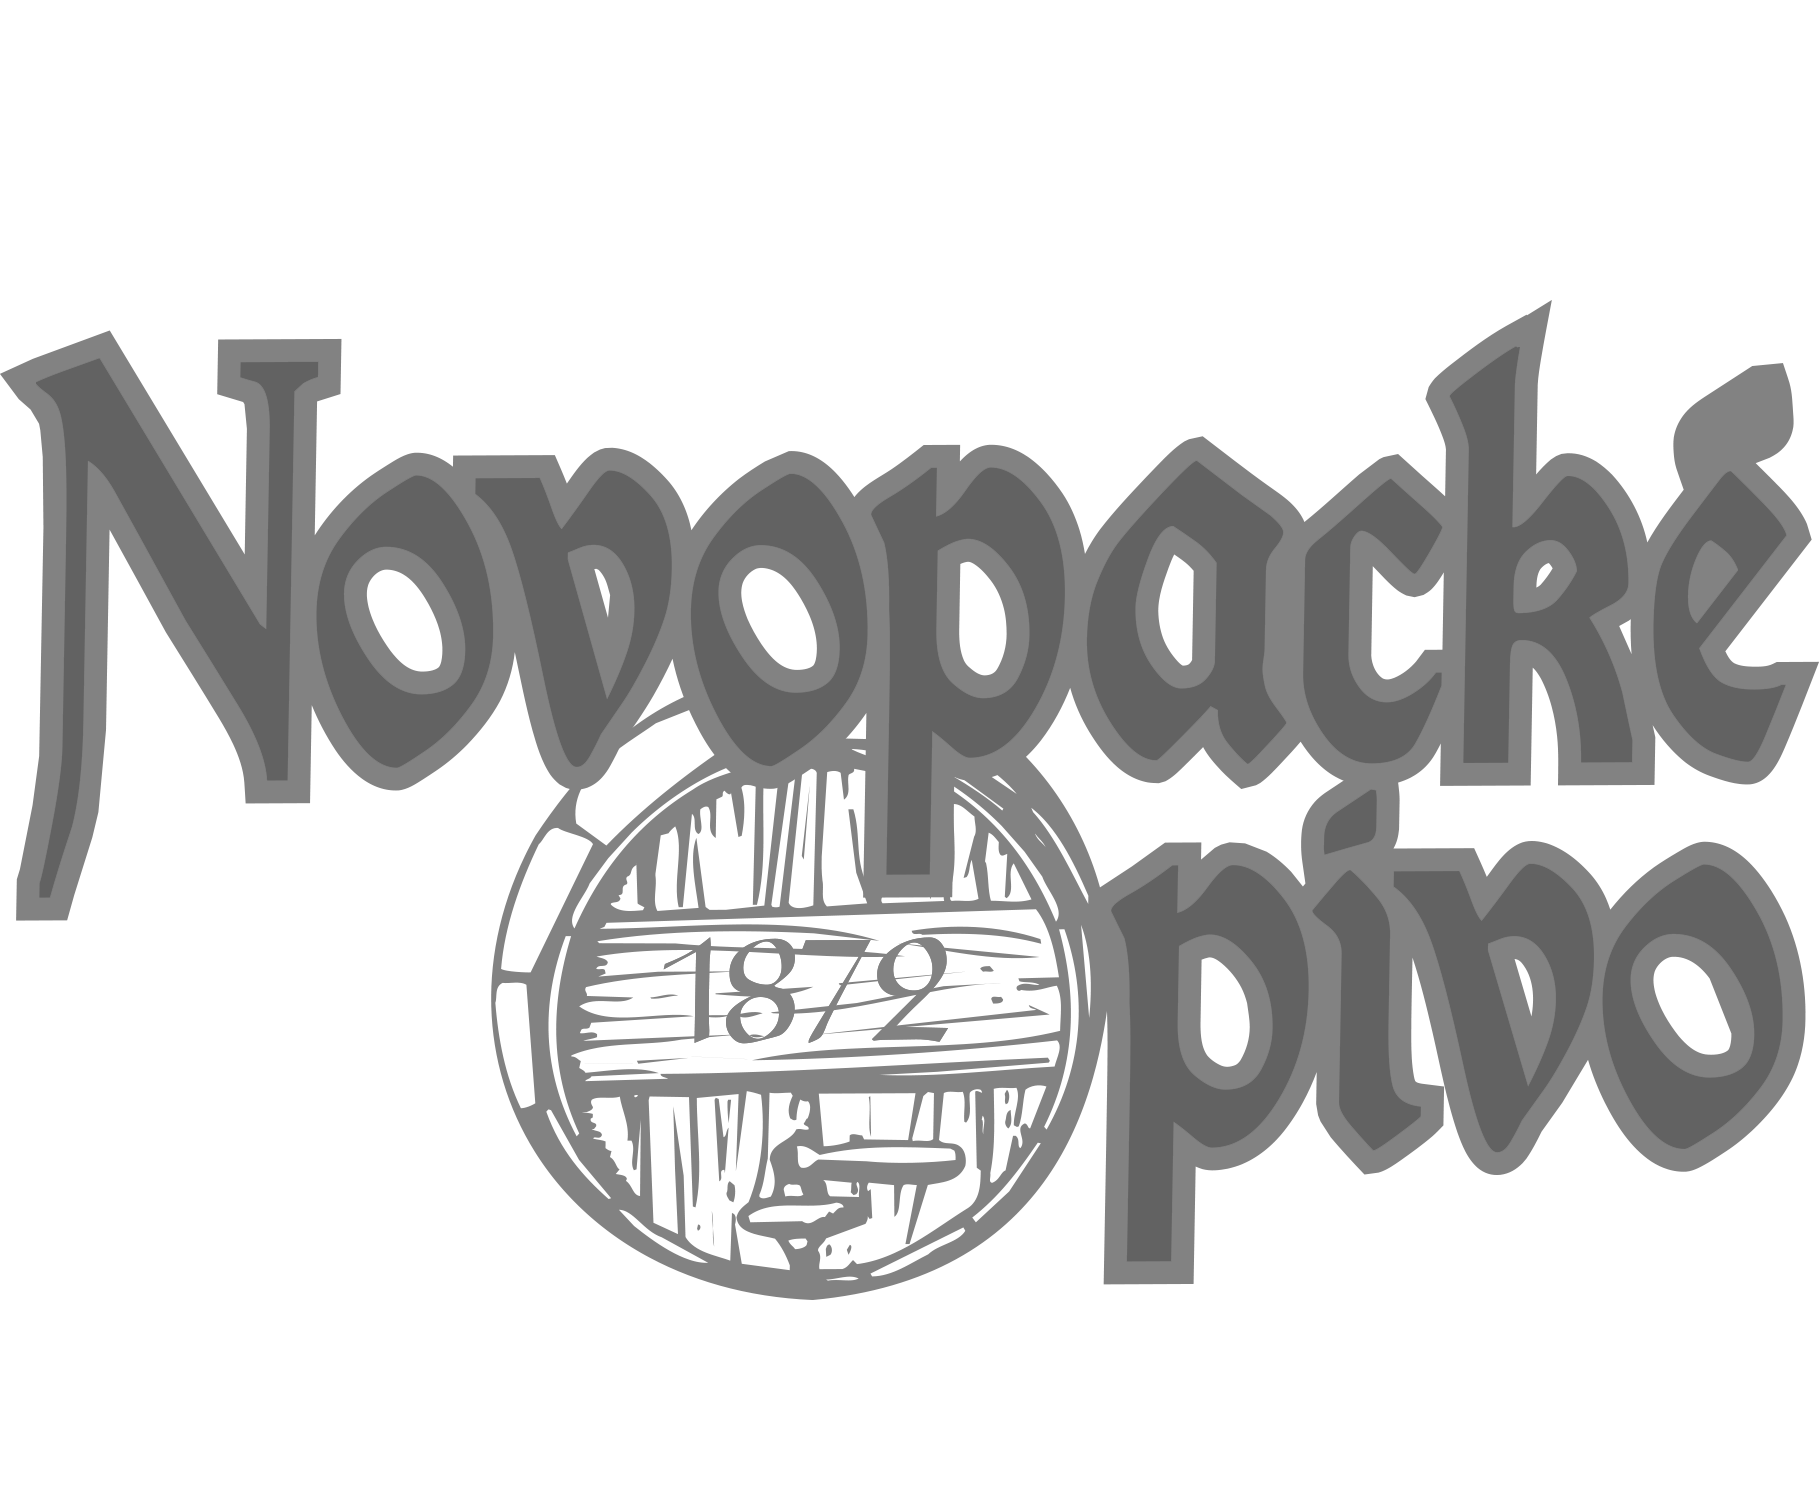 Novopacké-pivo